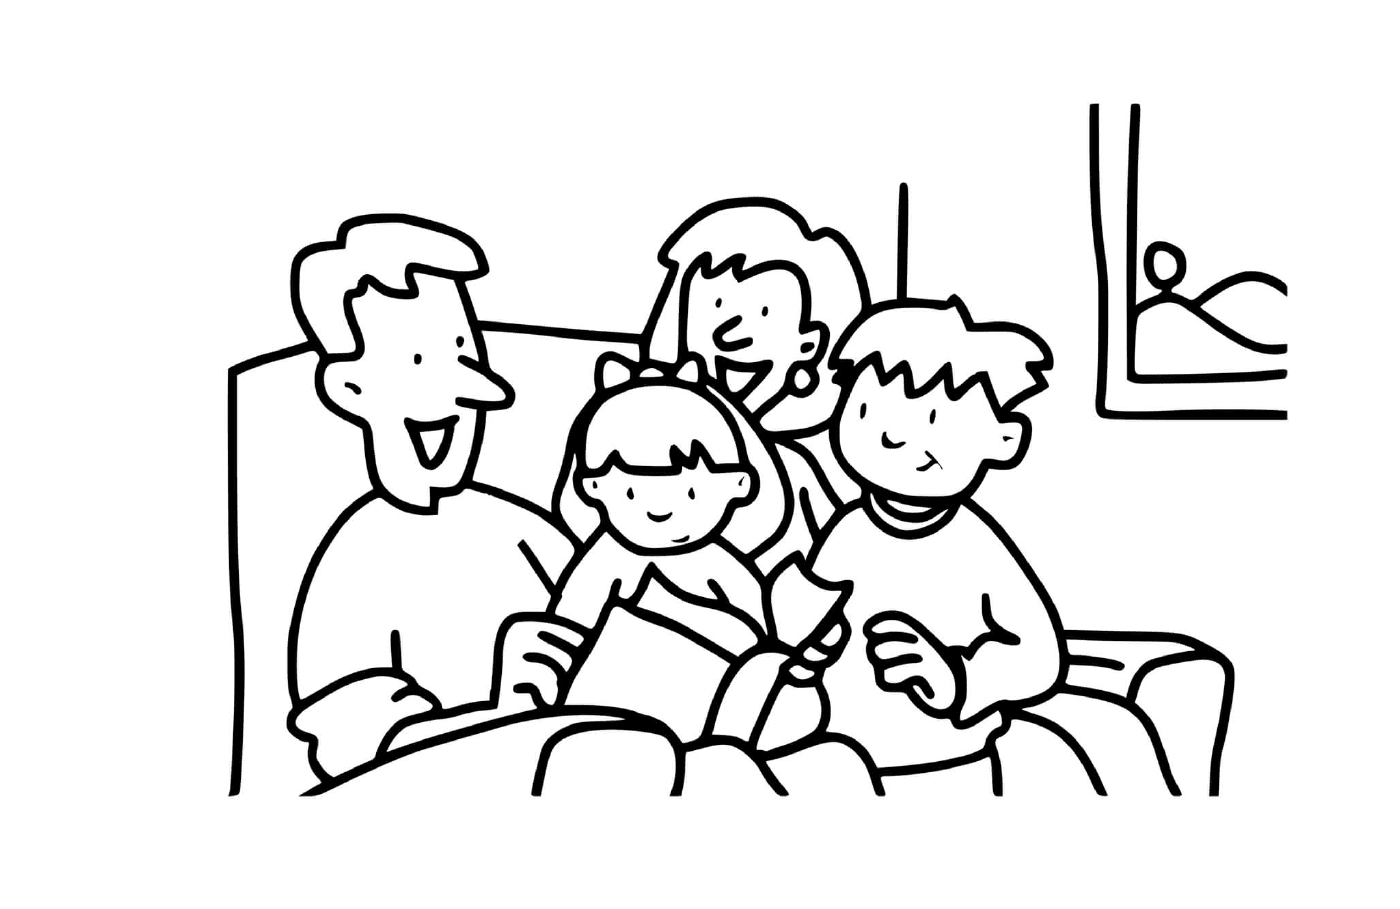  Группа людей, сидящих на диване 